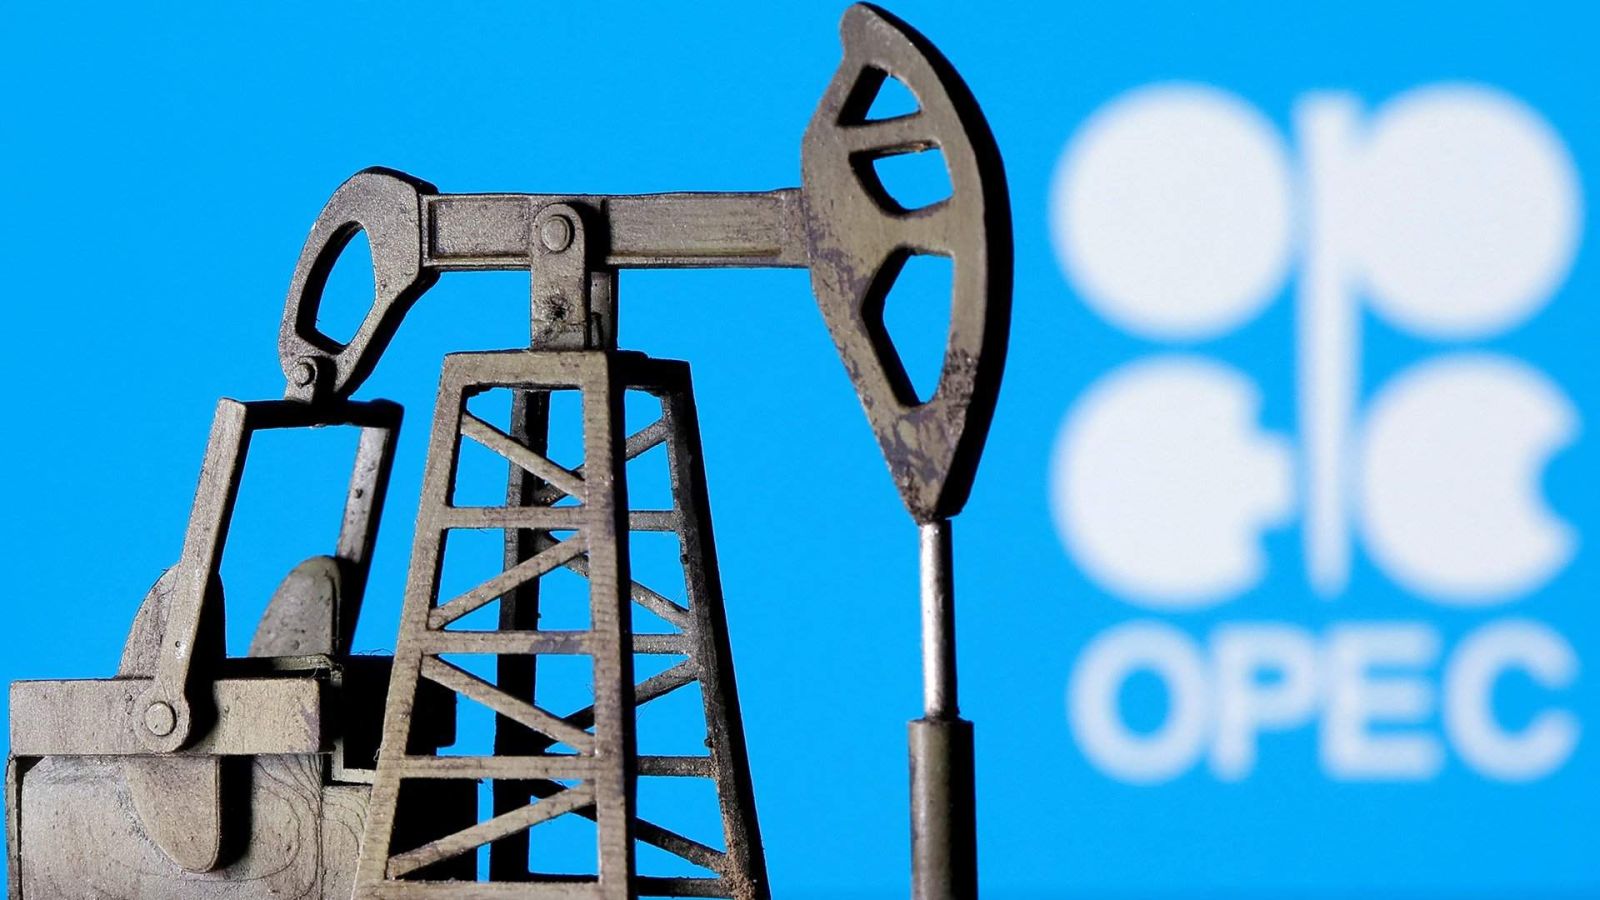 OPEC neft tələbi ilə bağlı PROQNOZ verdi